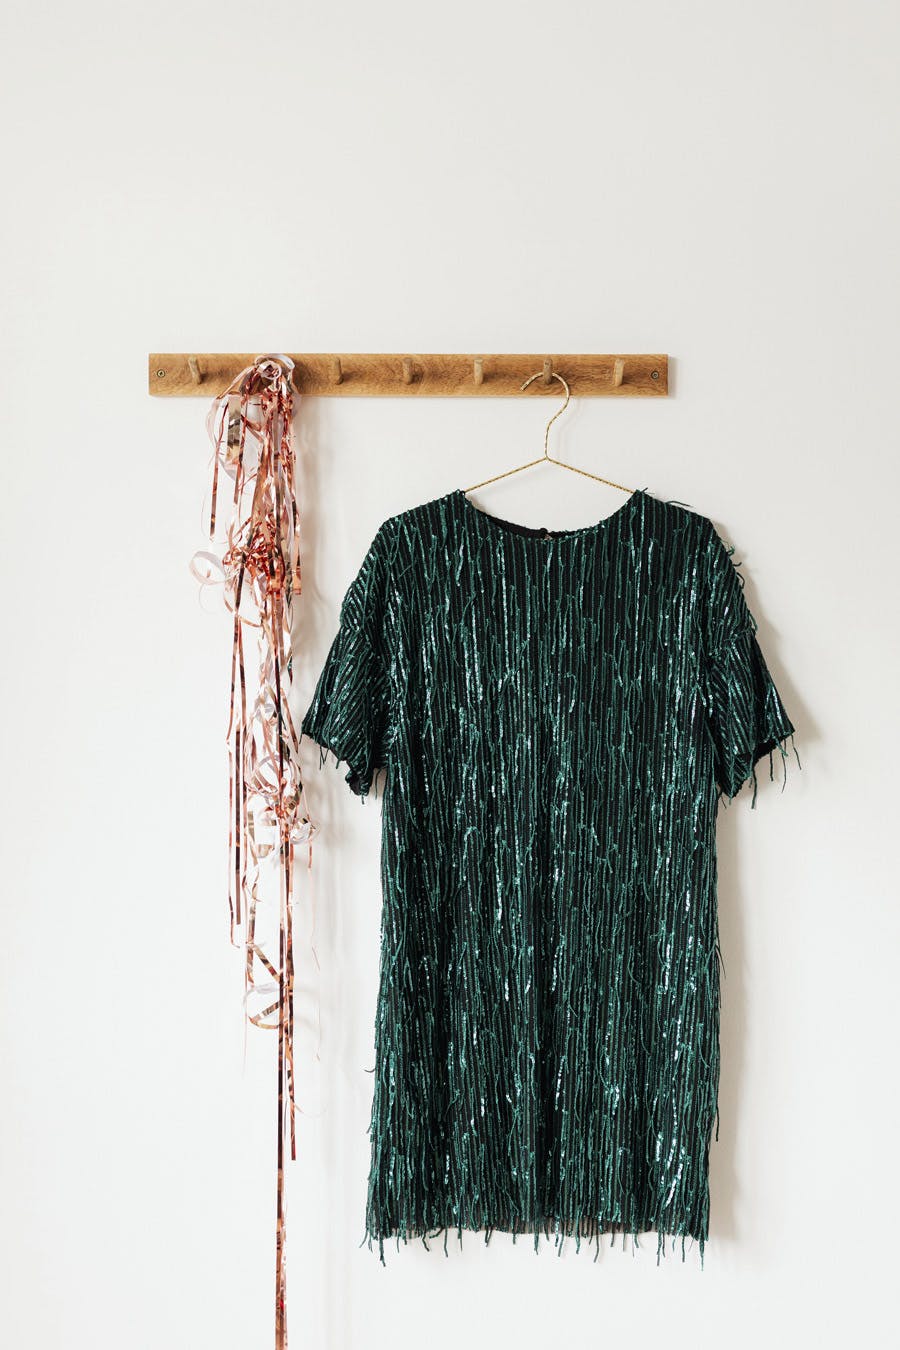  foto de un vestido de lentejuelas verdes colgado en la pared